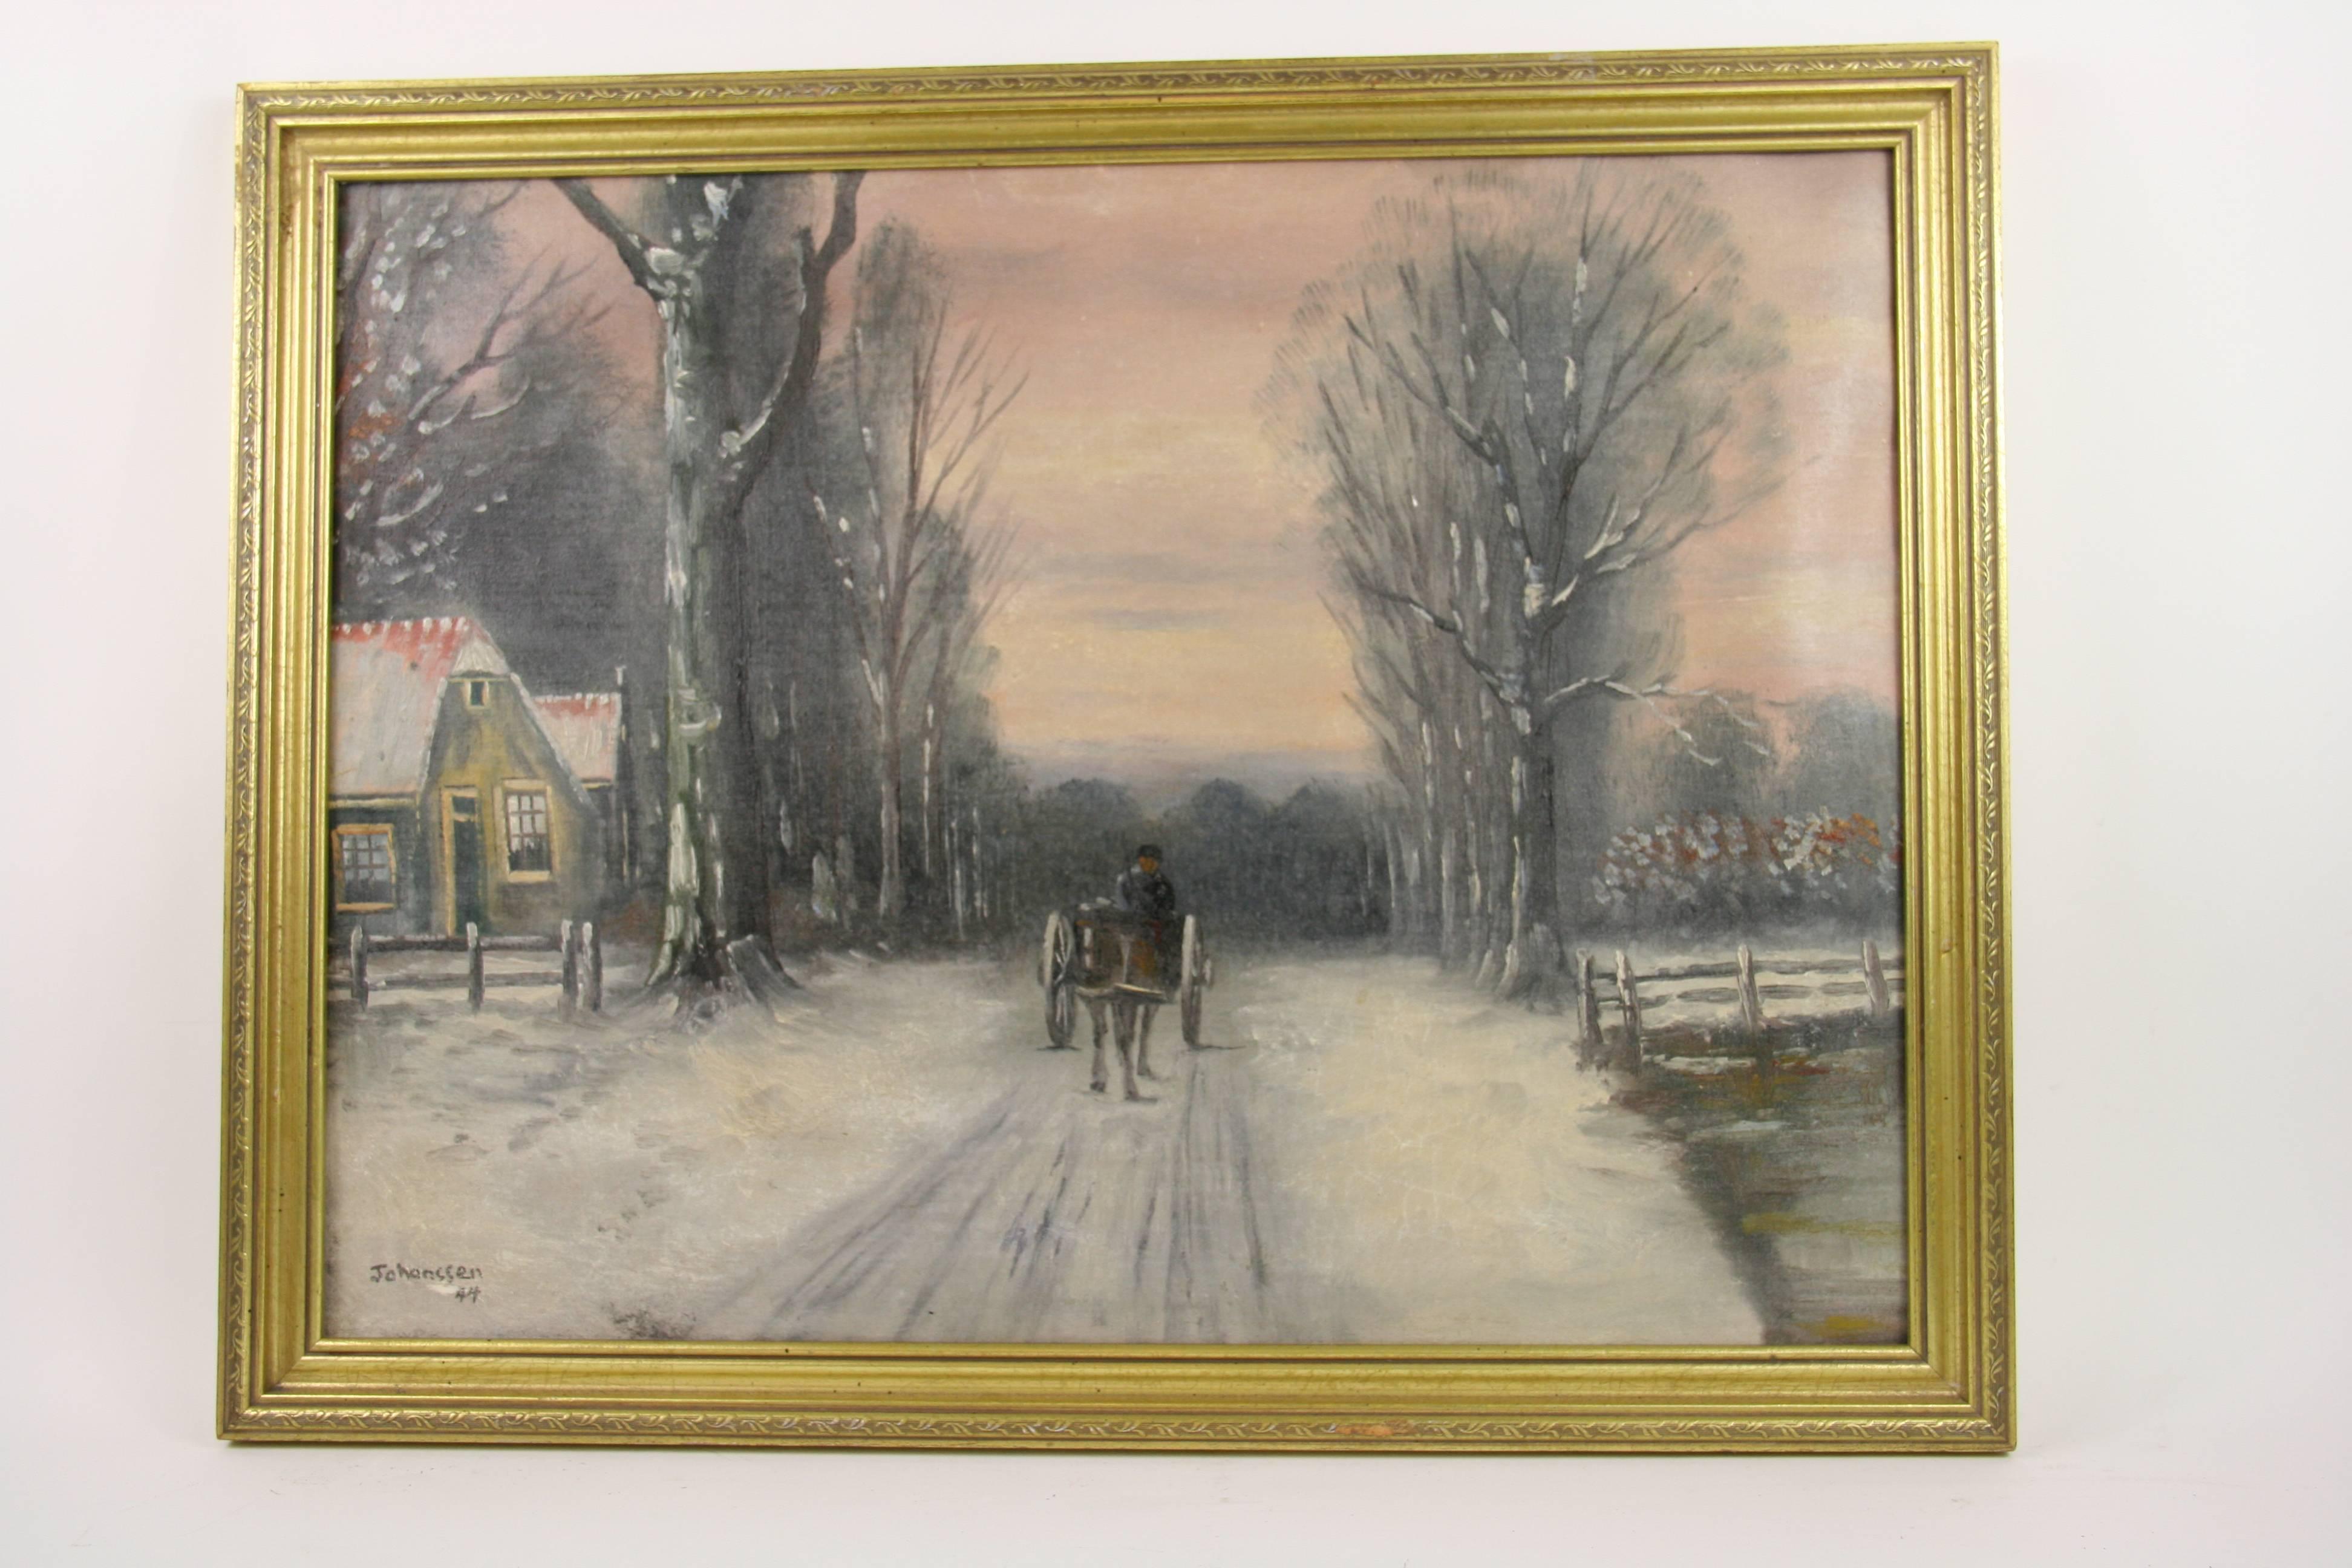 Jahanssen Landscape Painting – Antike Pferde und Kutschen  Dänisch  Winterlandschaft, Ölgemälde  Gemälde um 1940